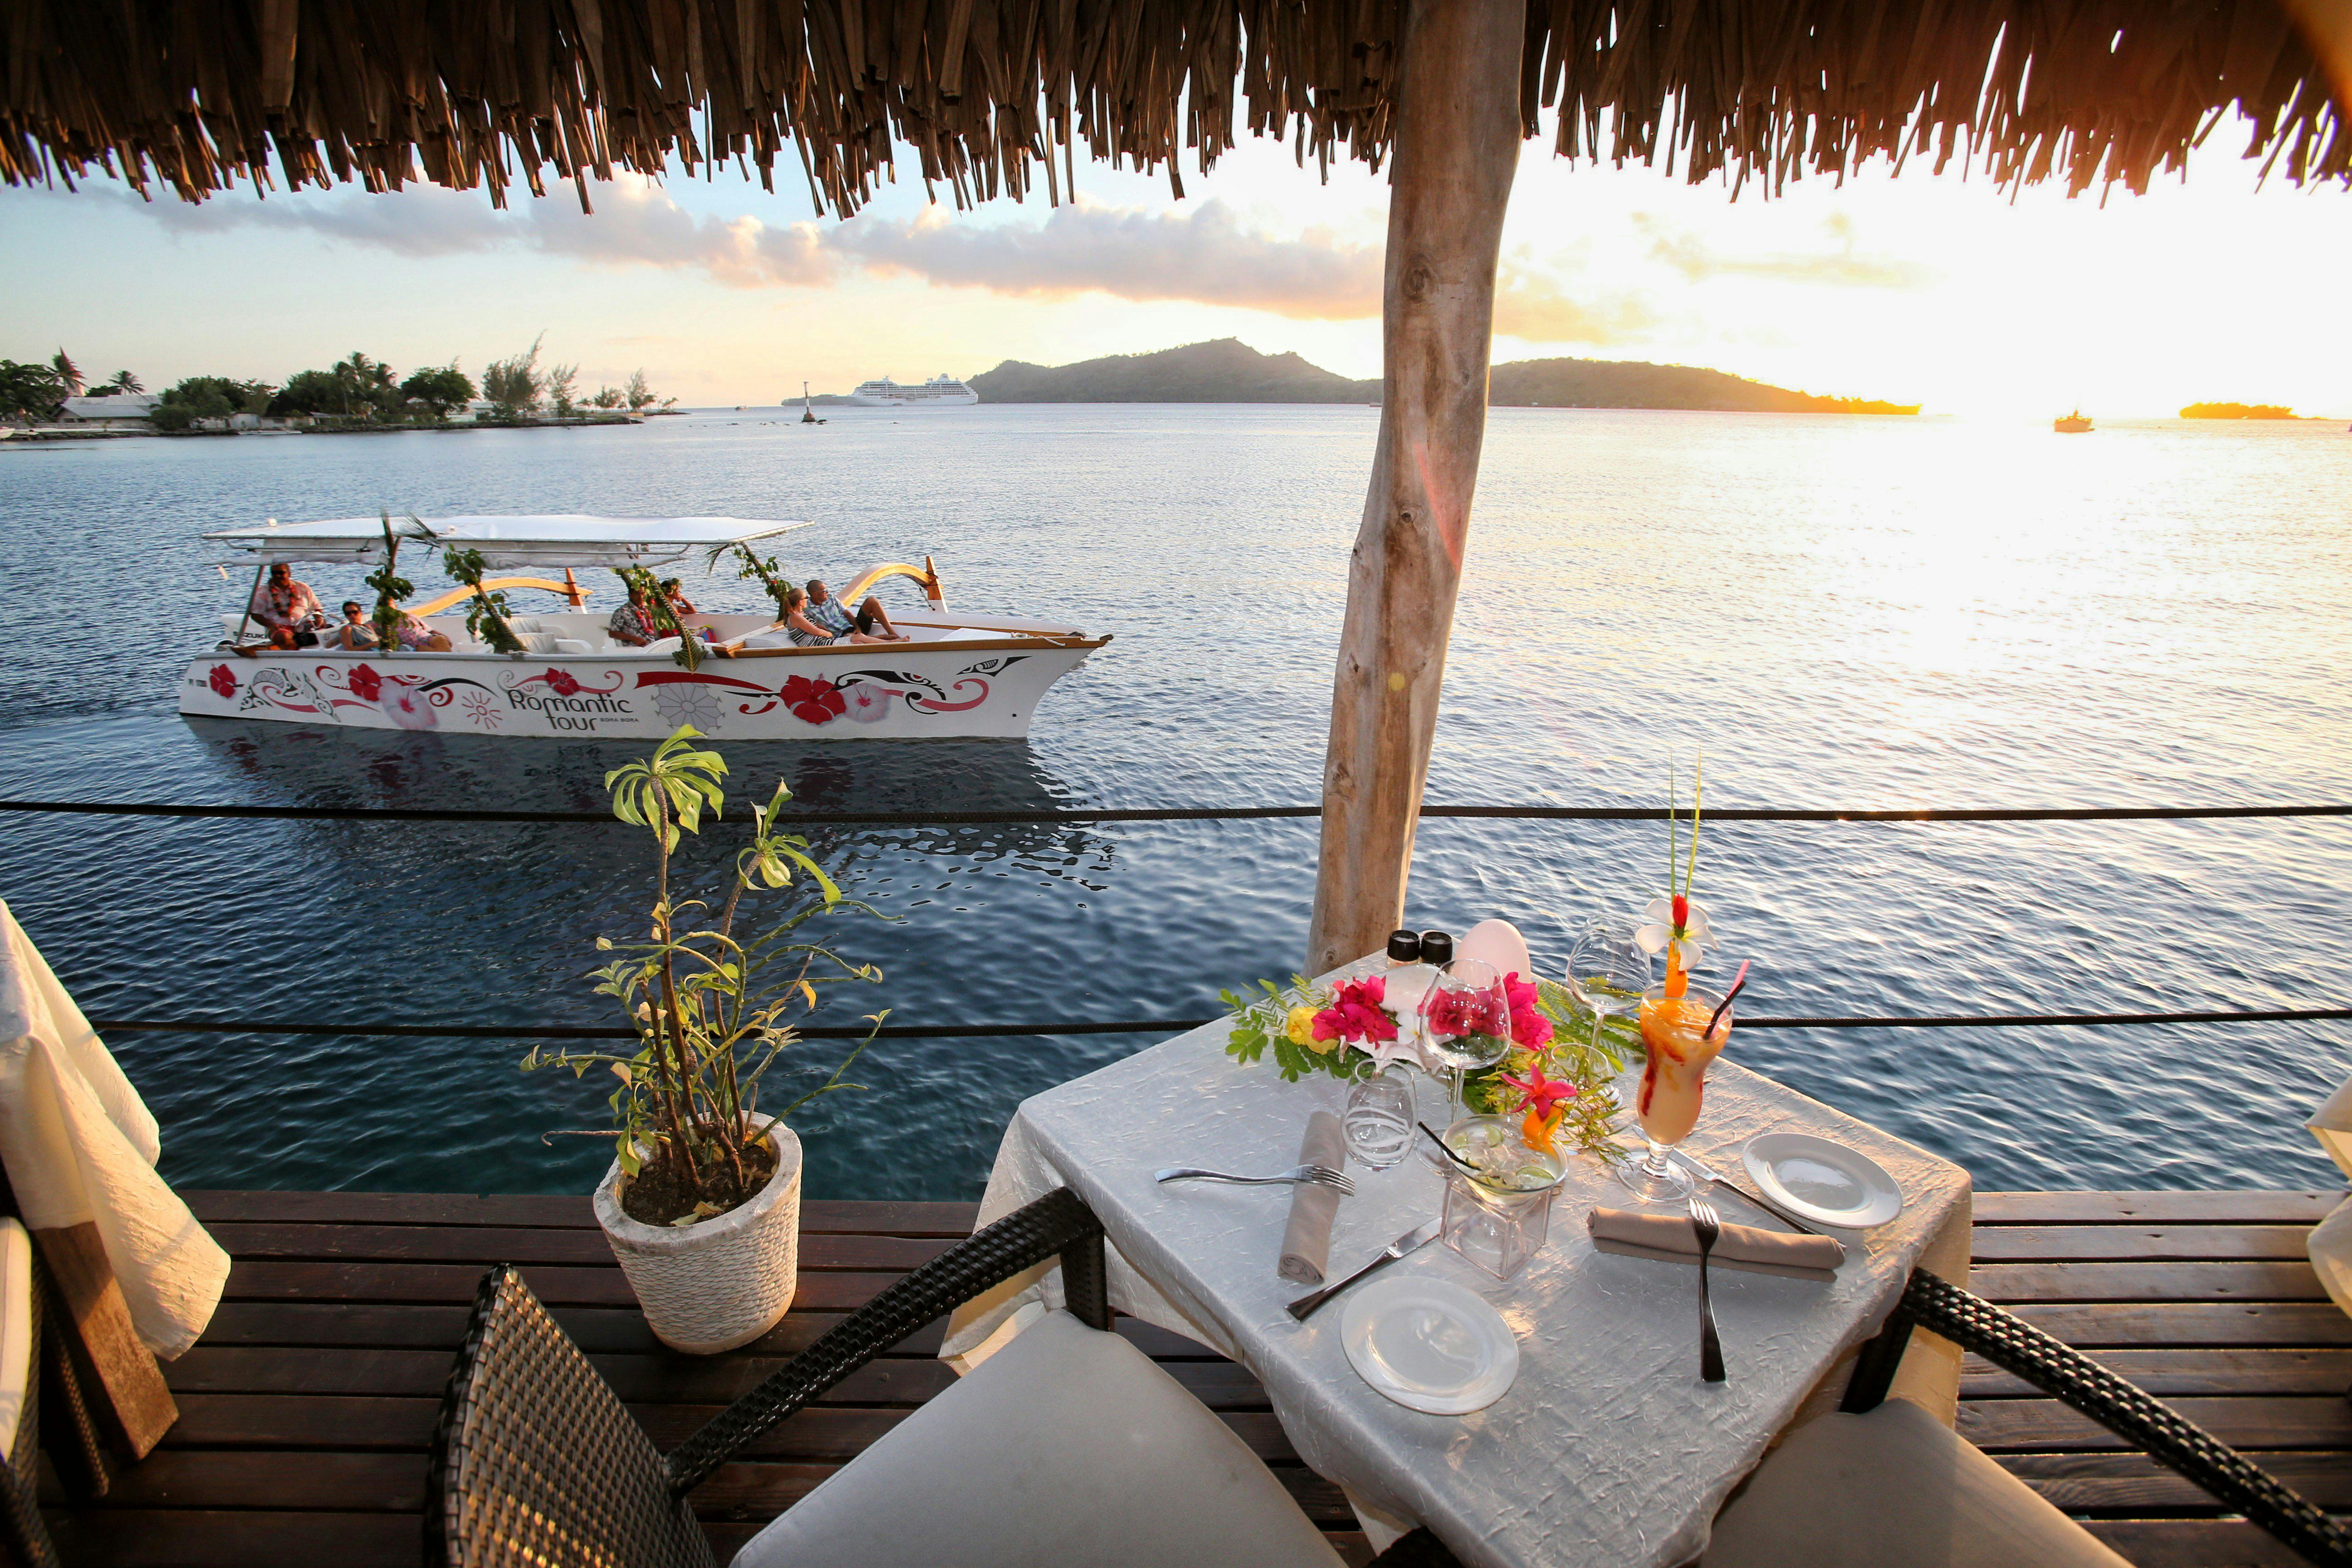 Bora Bora crucero romántico al atardecer con cena